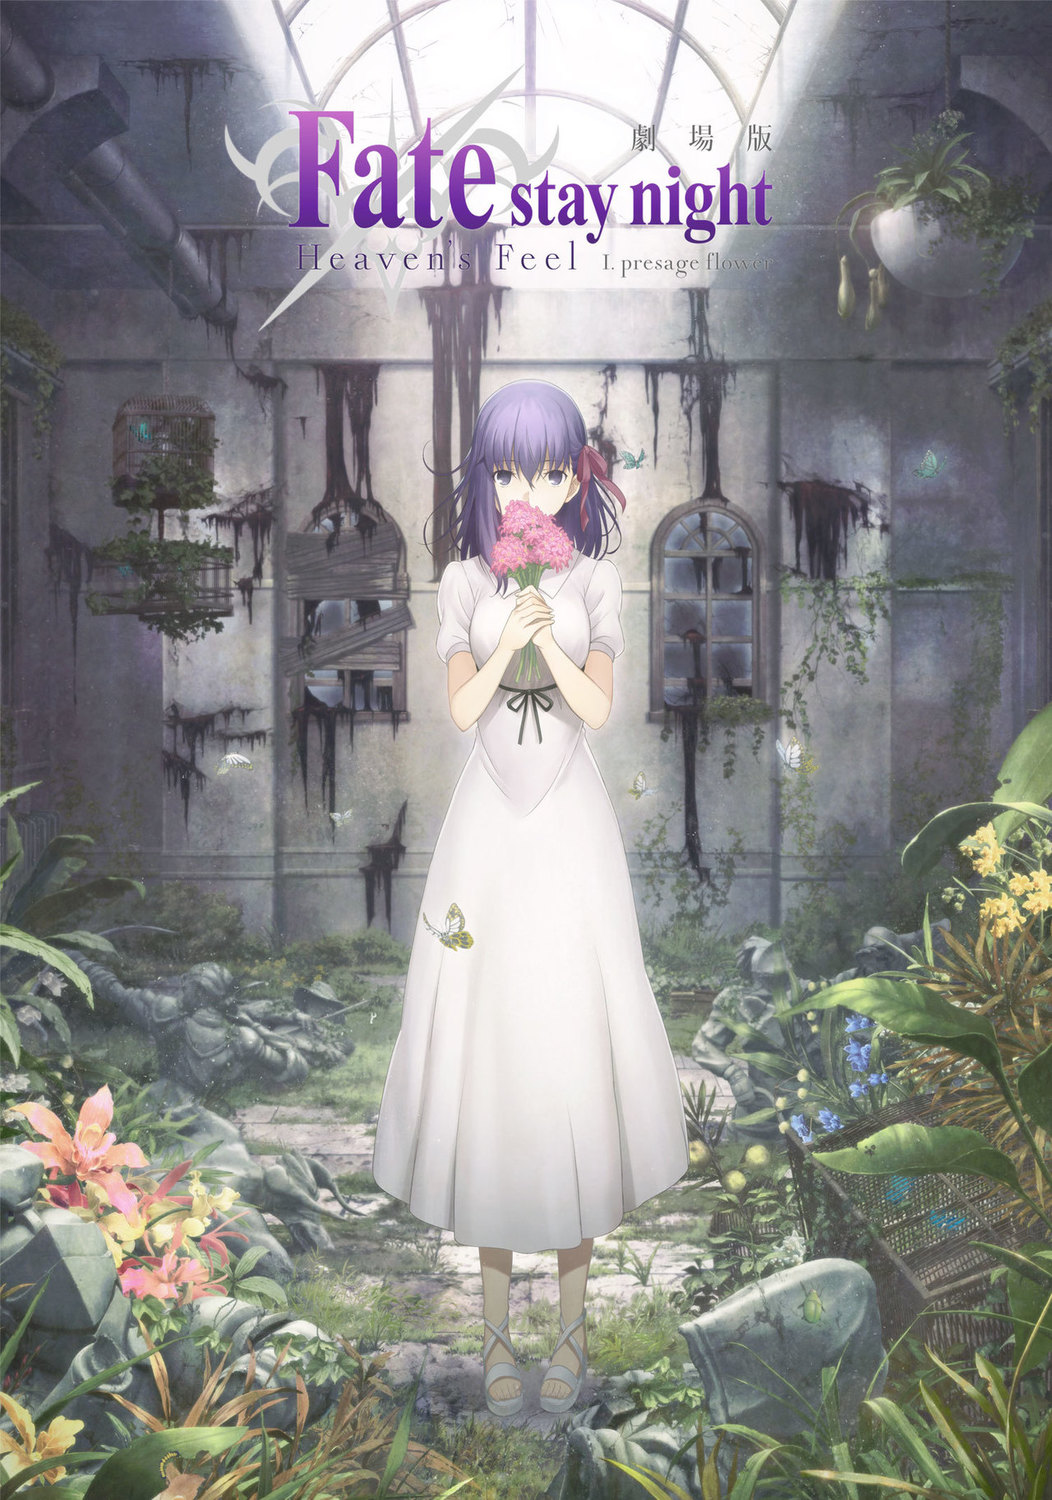 「Fate/stay night[Heaven's Feel] Ⅰ.presage flower」 | Fandíme filmu